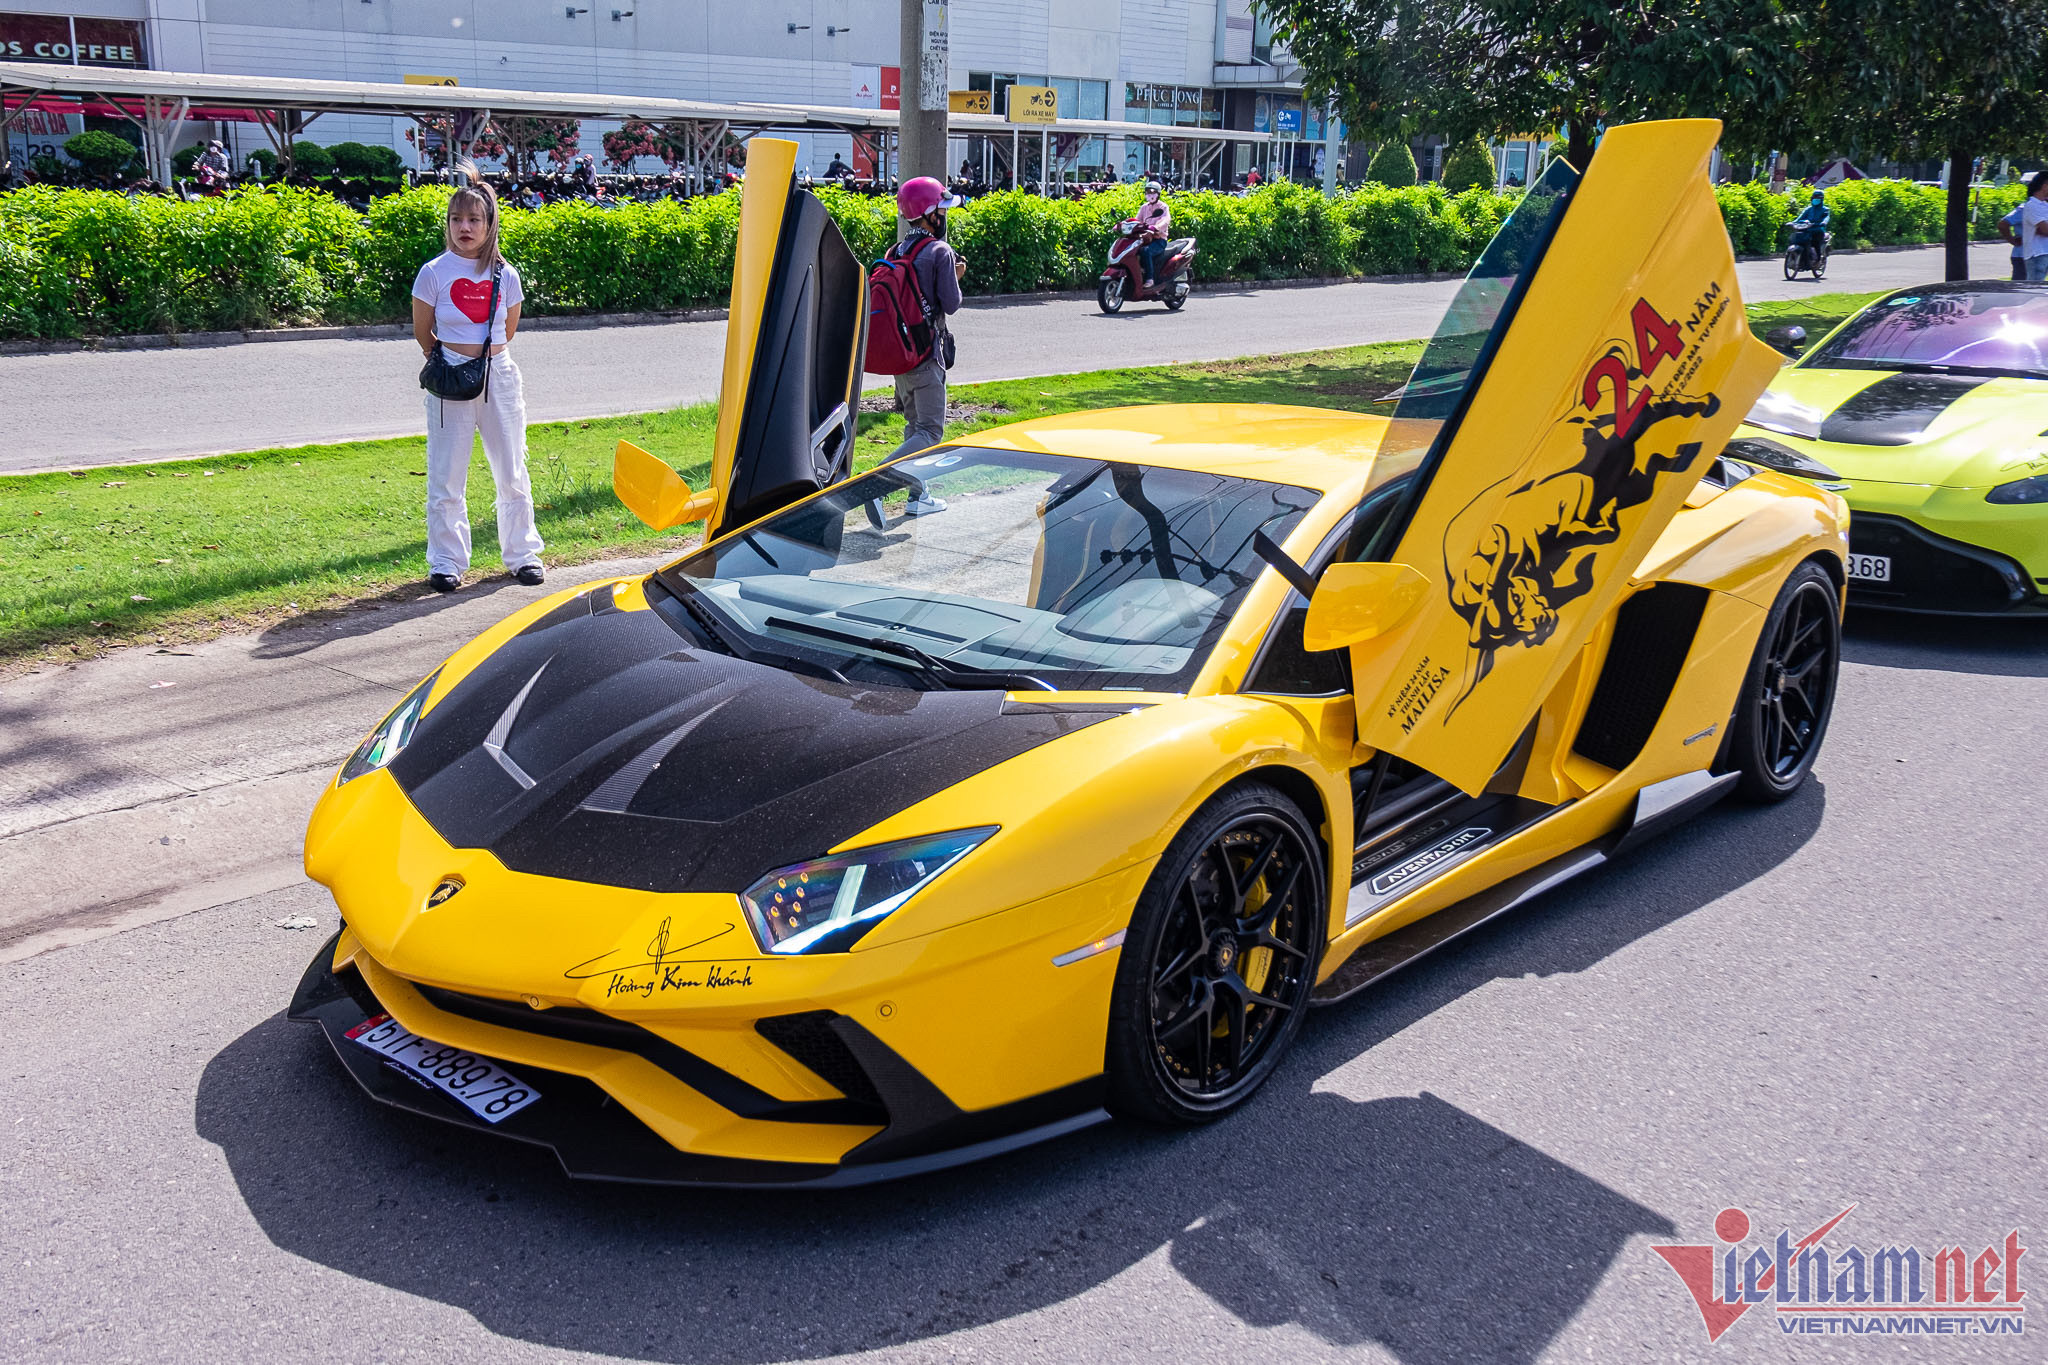 Siêu xe Lamborghini vừa bị triệu hồi của Hoàng Kim Khánh có gì đặc biệt?